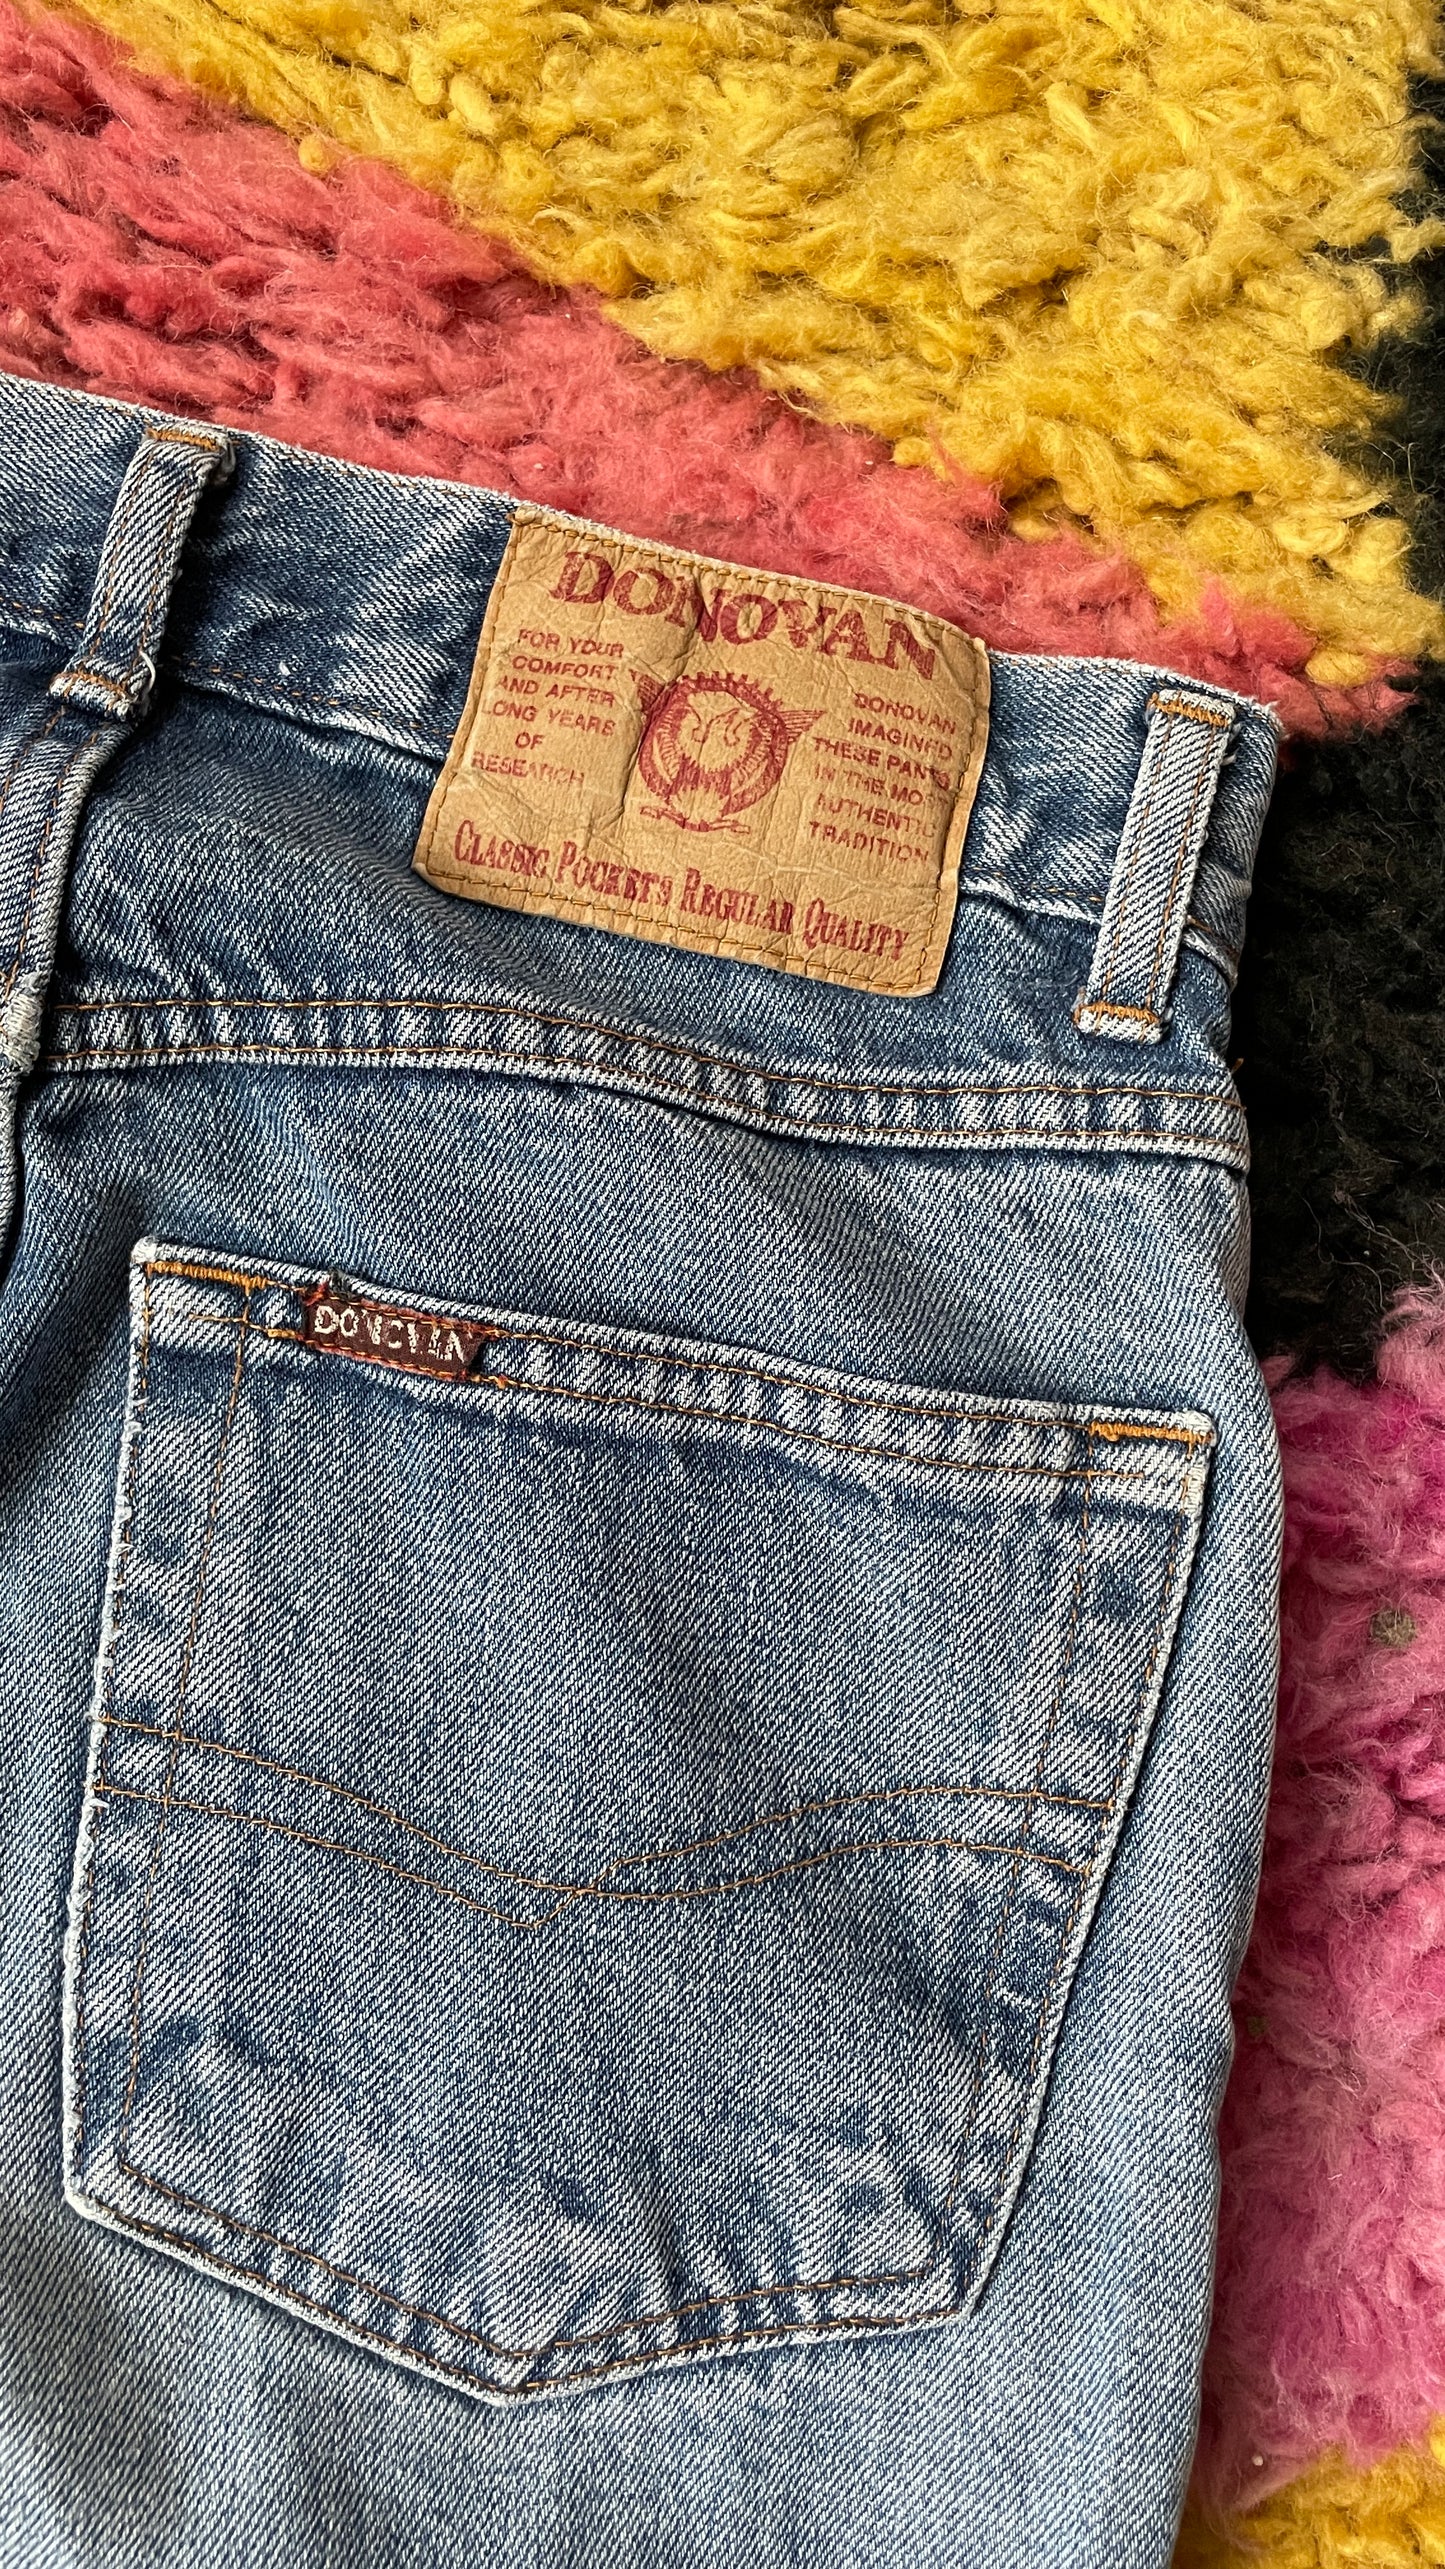 Donovan jeans